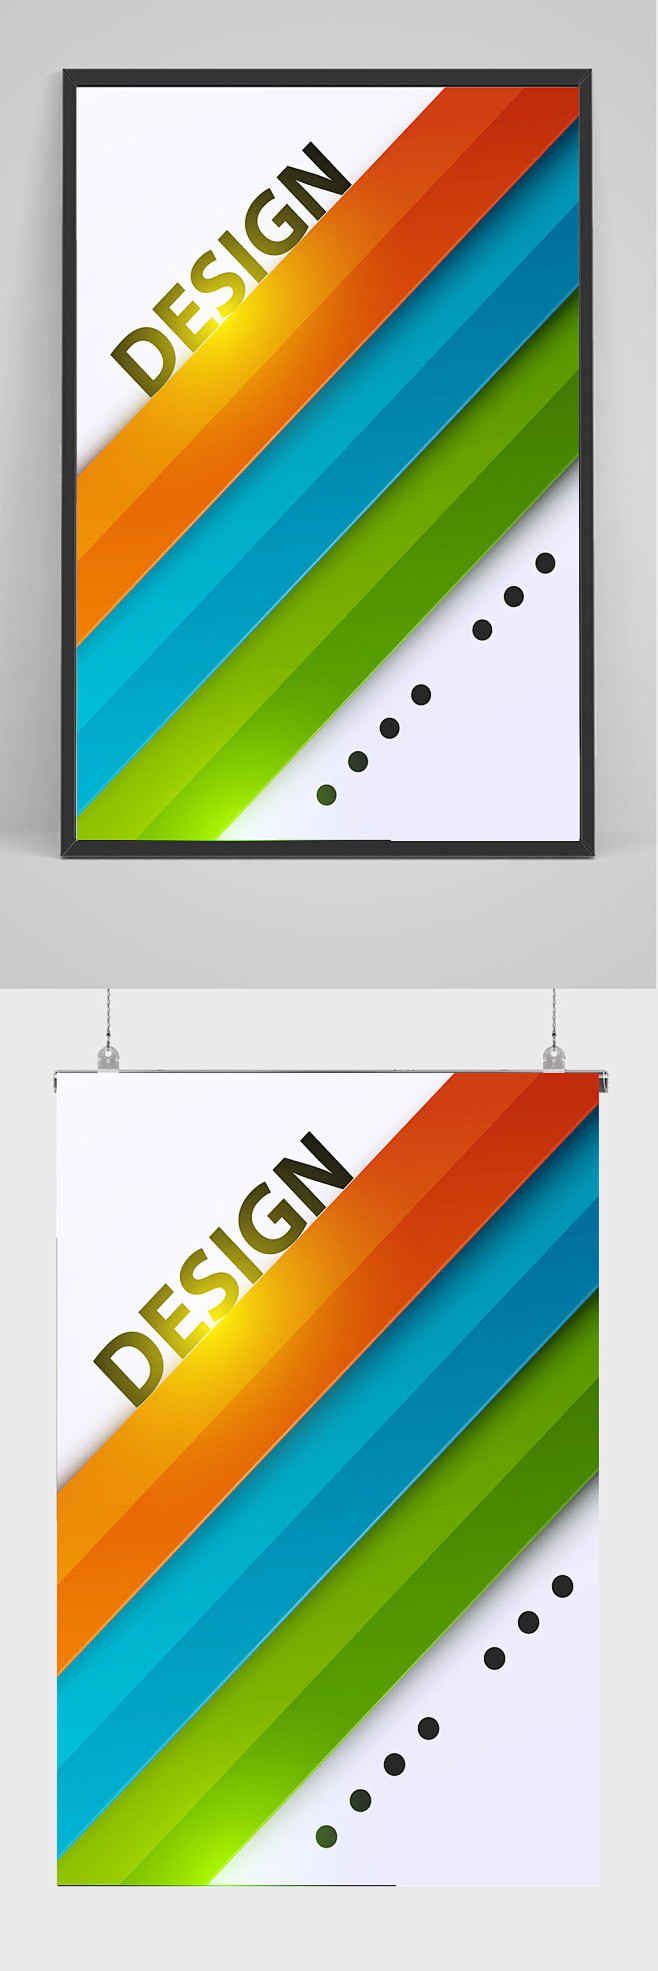 创意图形商务公司通用海报设计